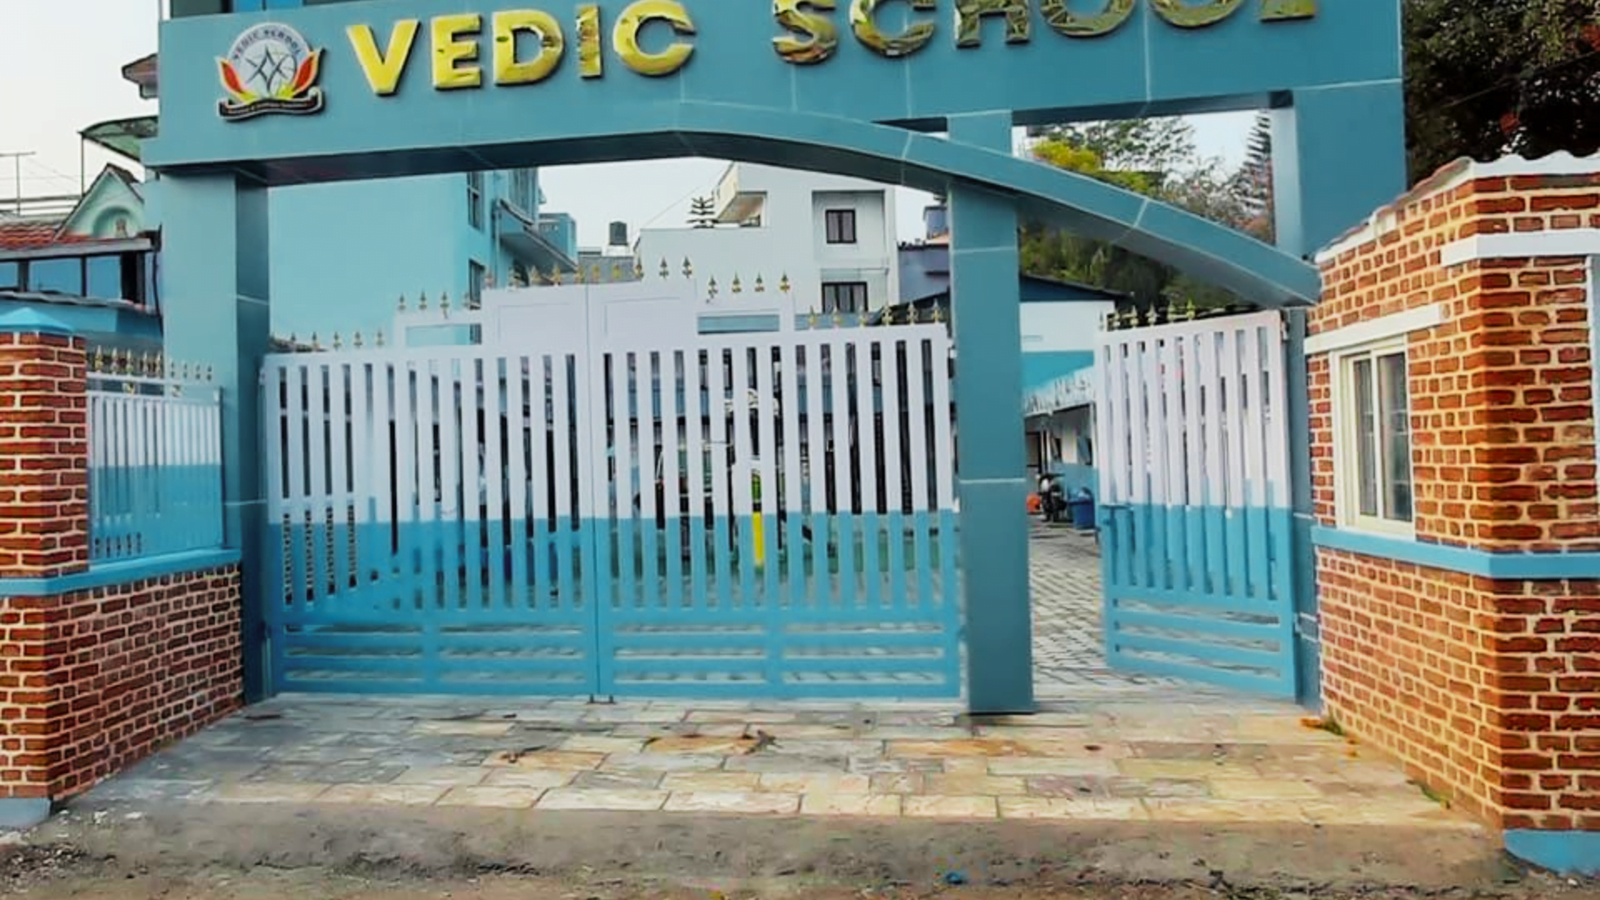 Vedic schools will open in Jharkhand.